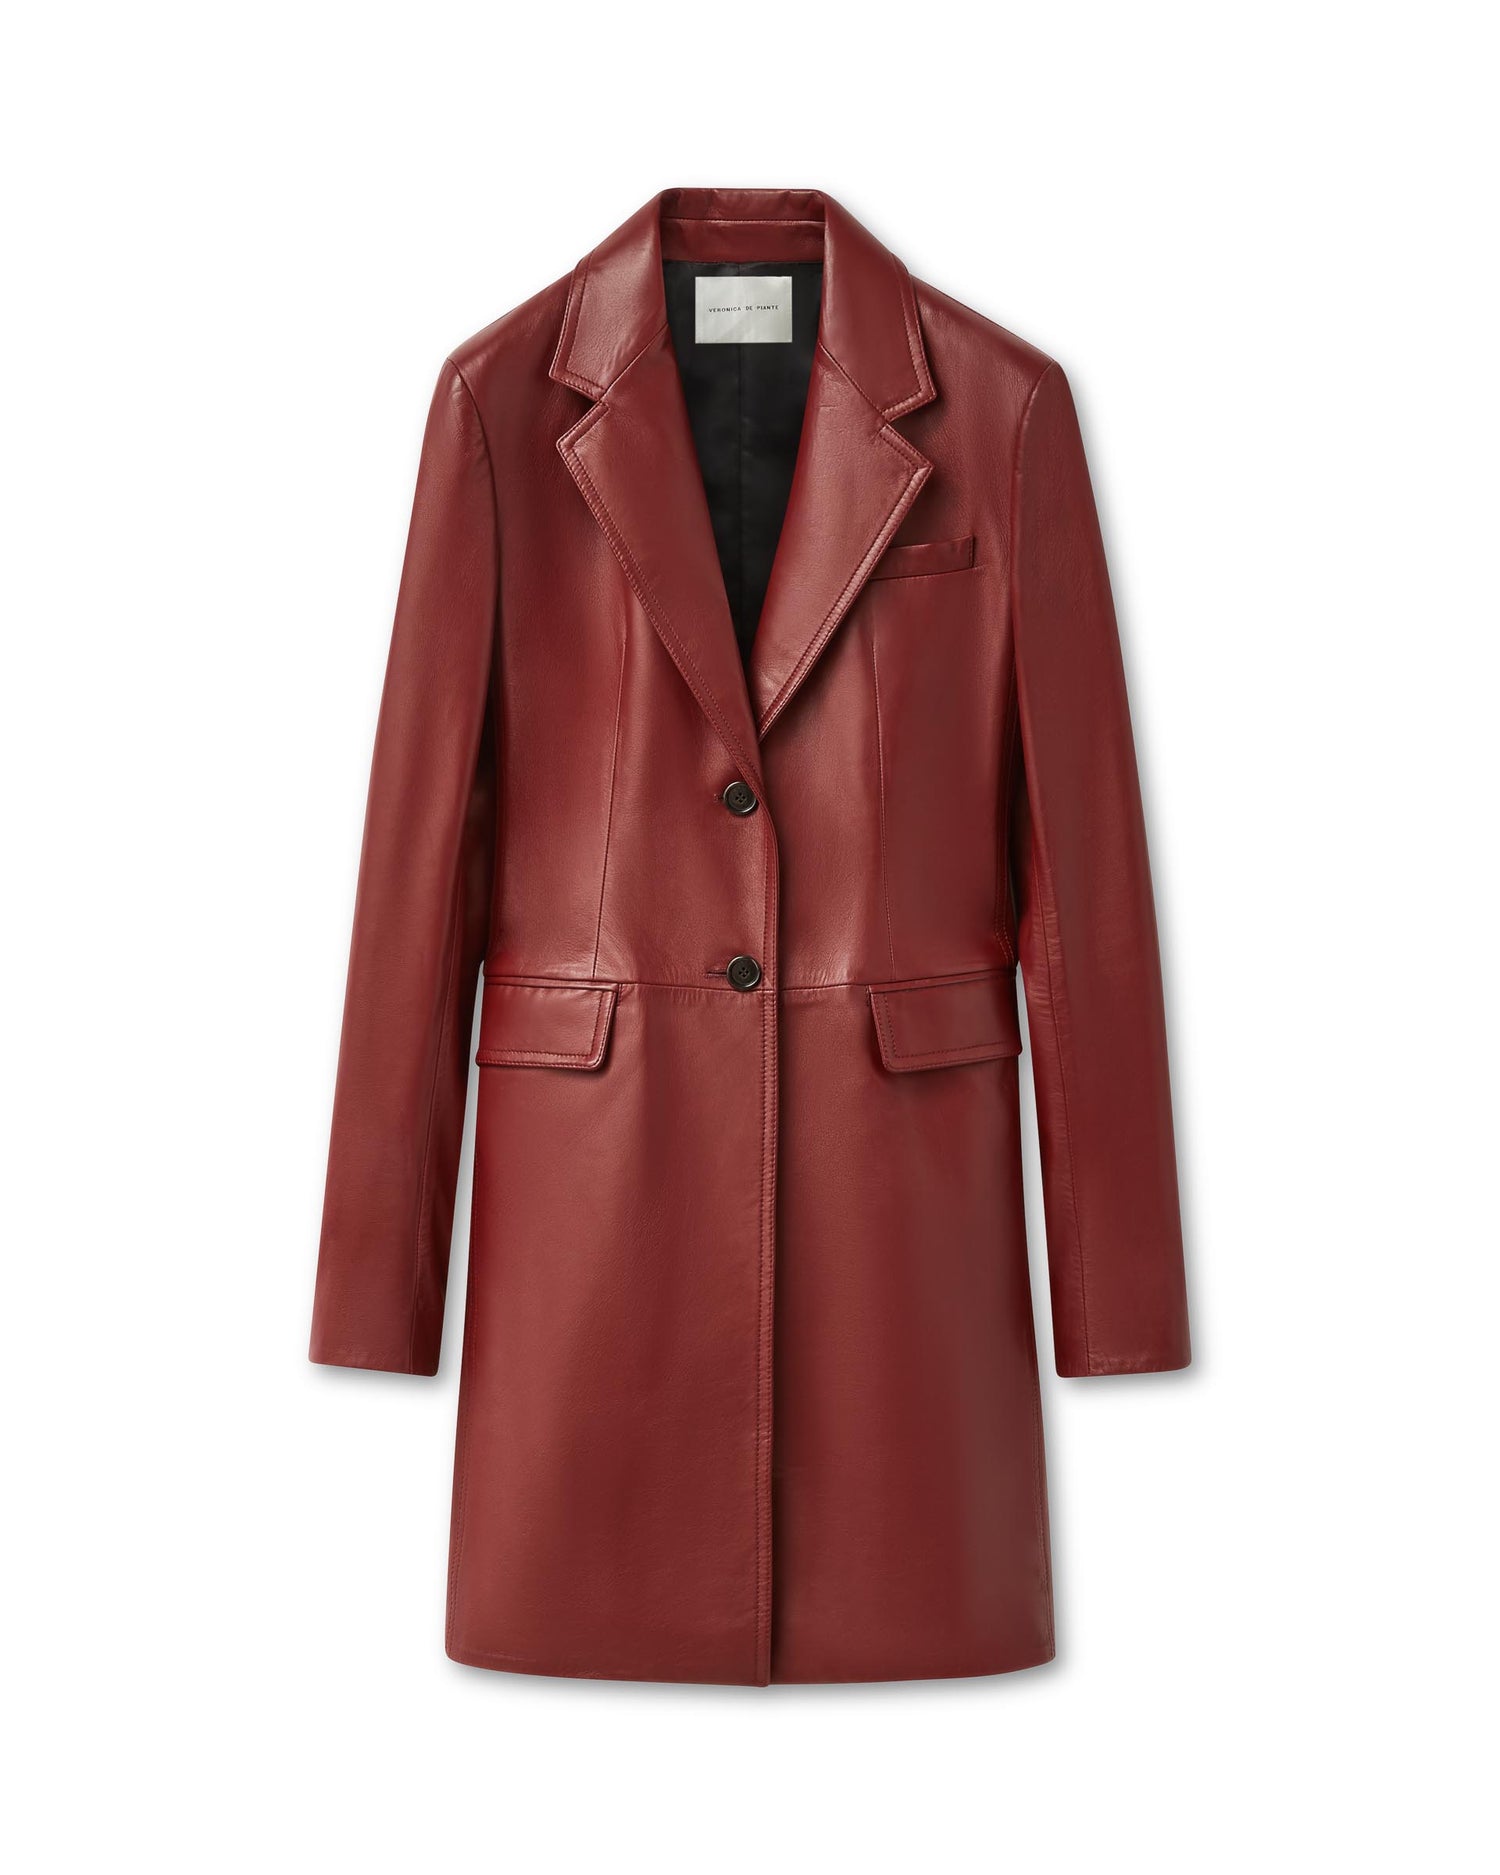 Stephanie Coat in Nappa Leather, Burgundy